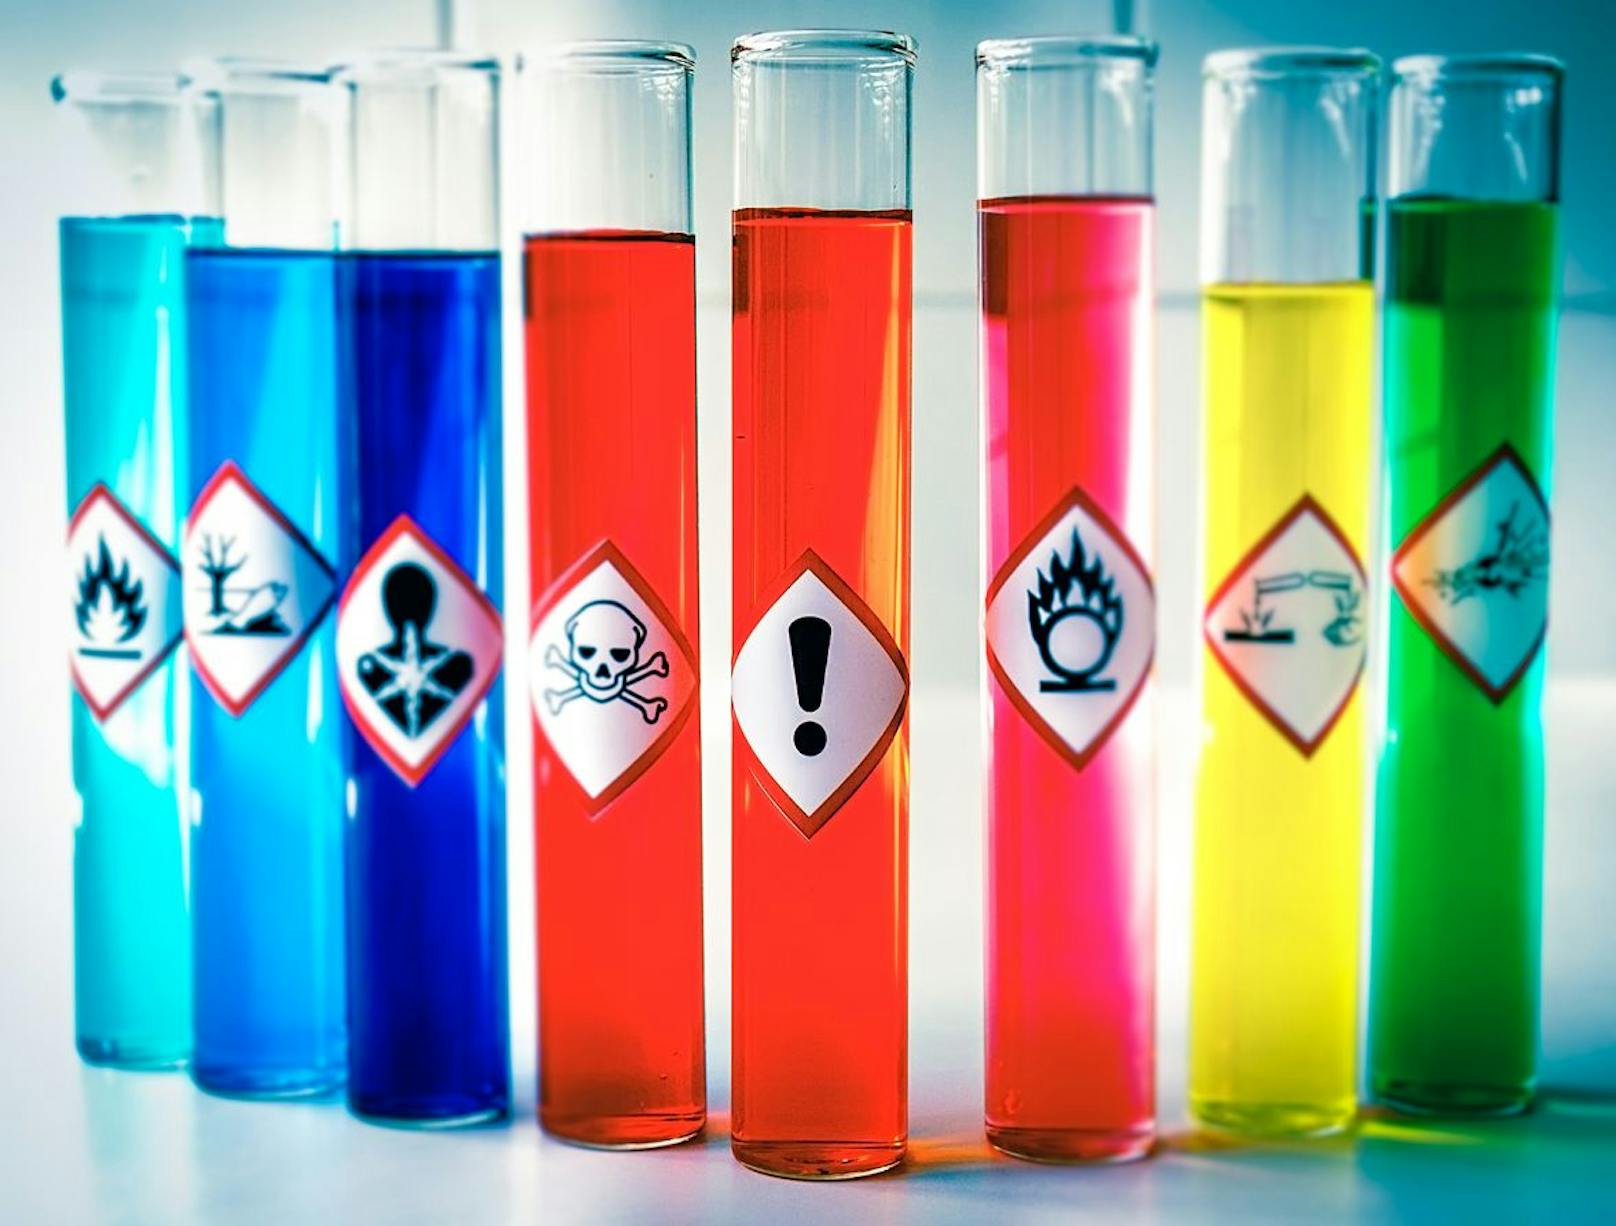 Um welche Chemikalie es sich handelt, ist unklar. (Symbolbild)